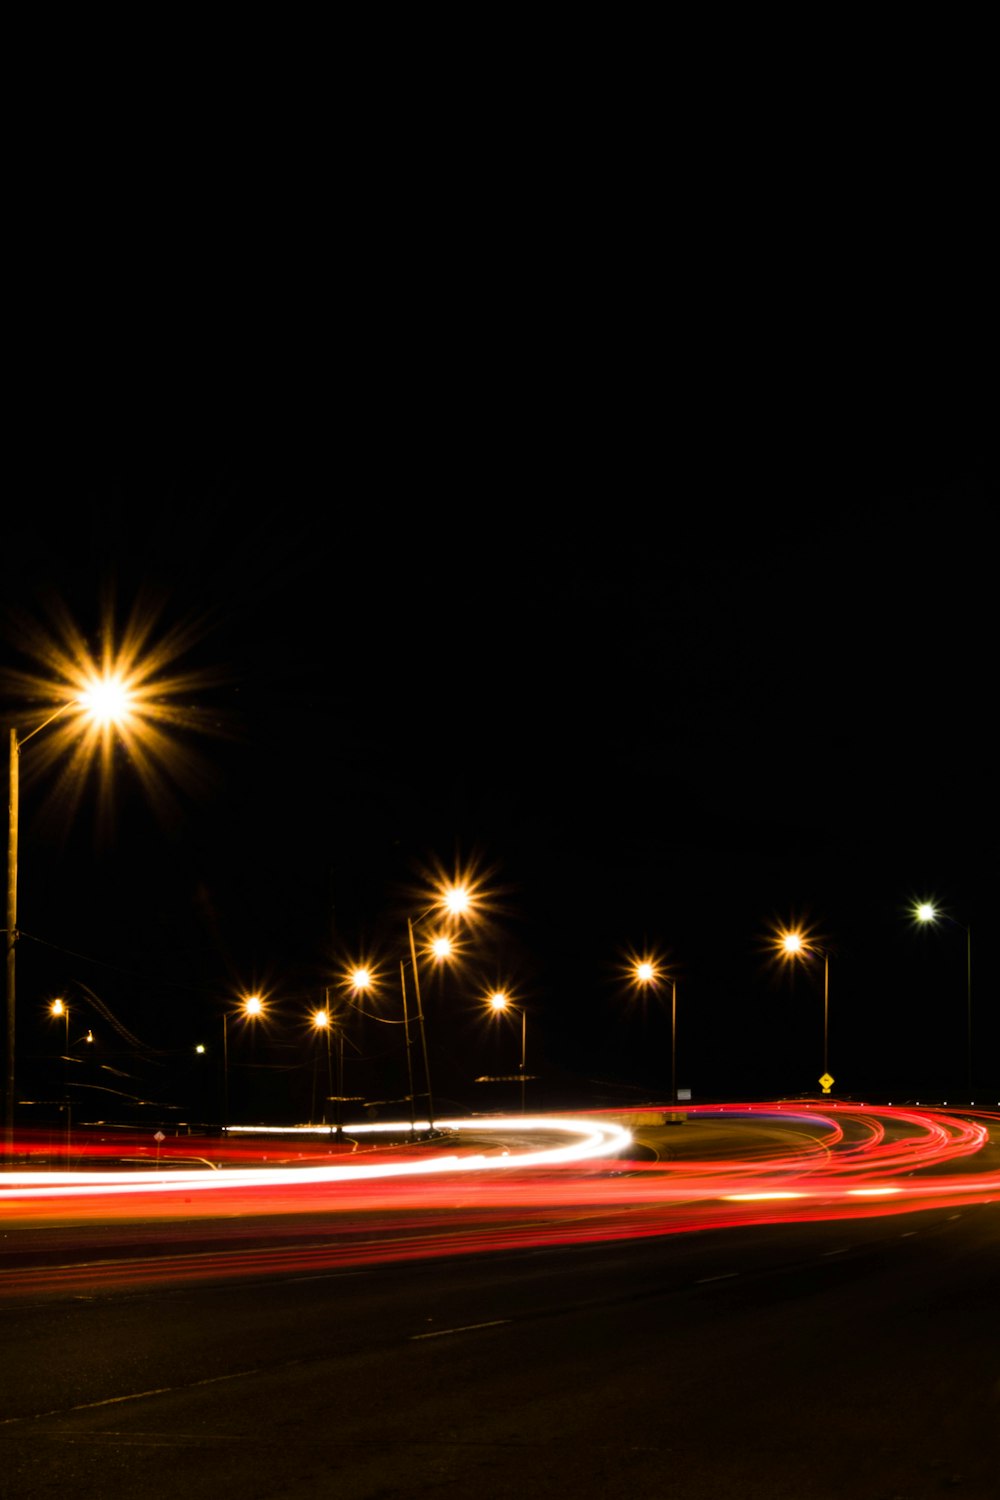 夜間の道路の長時間露光撮影